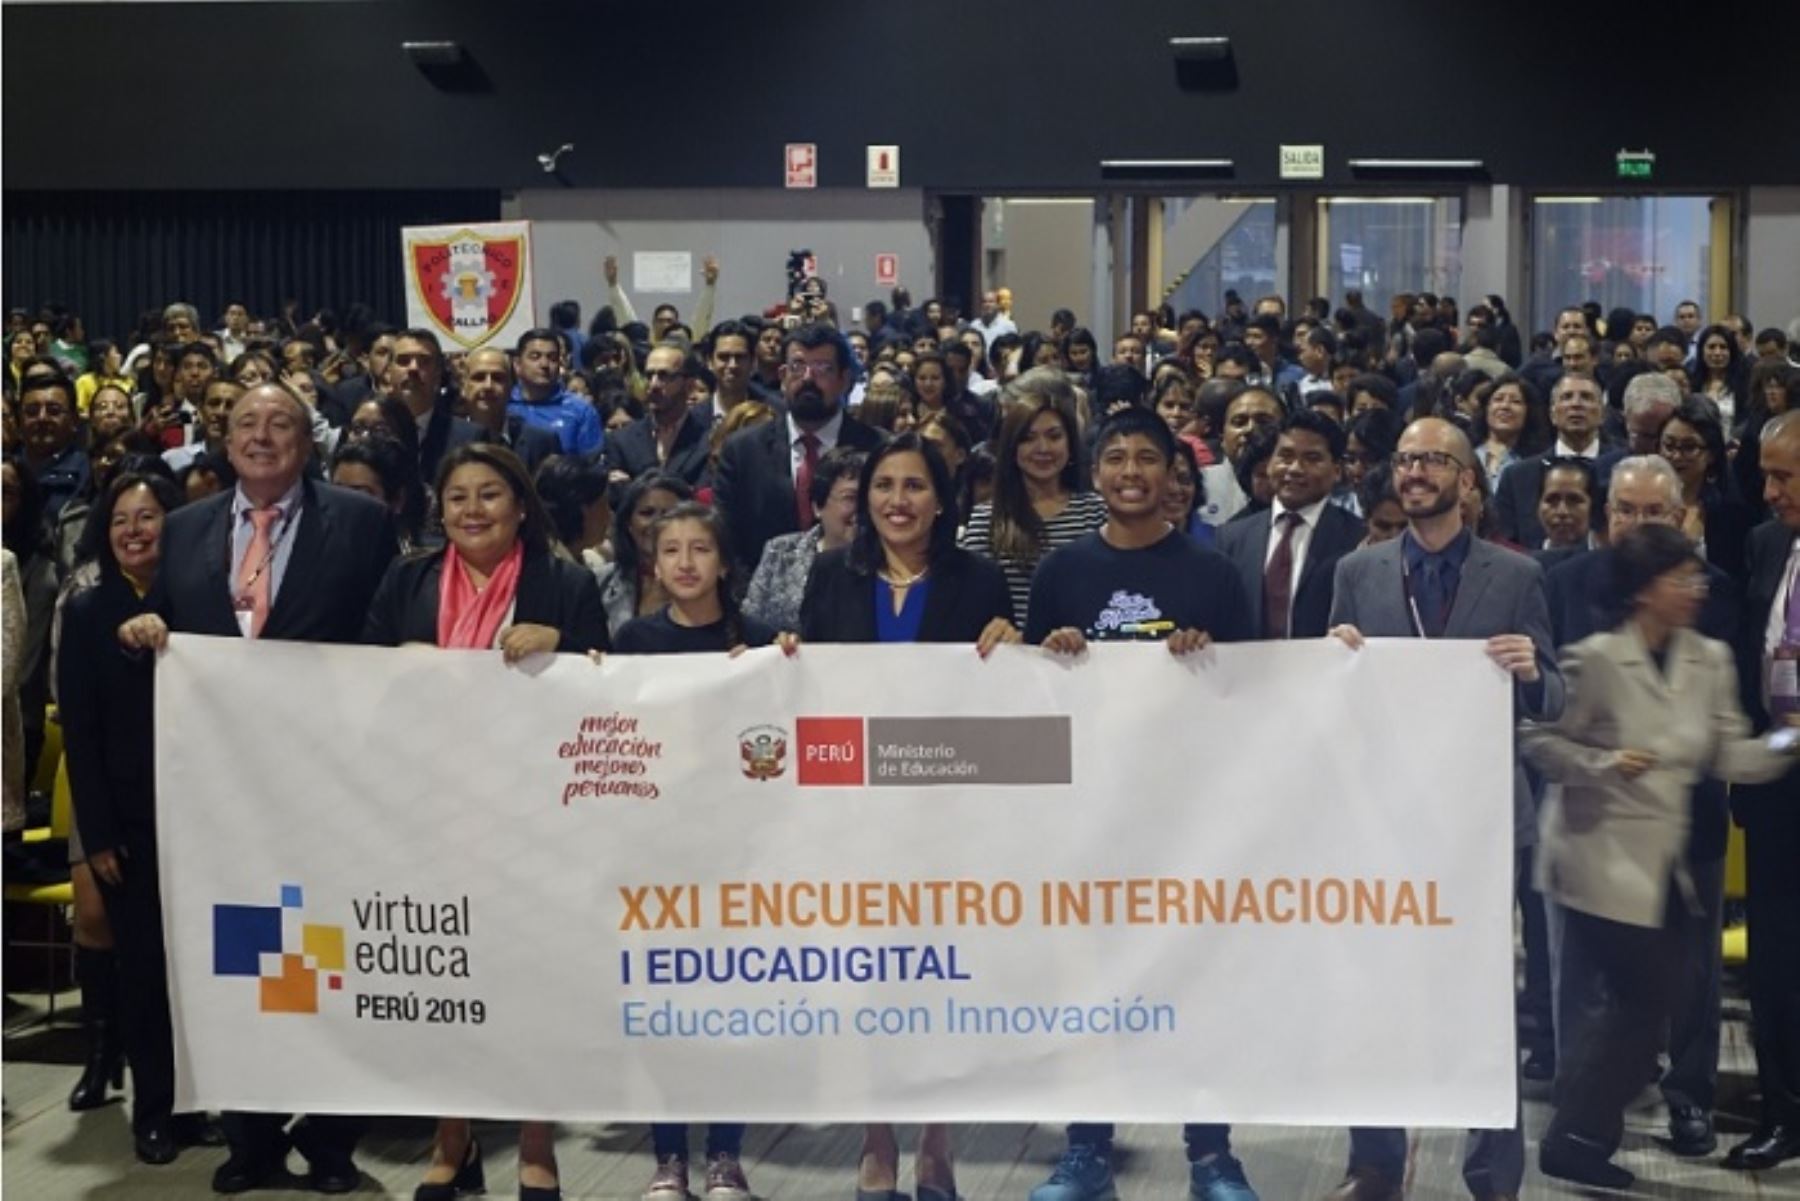 Ministra de Educación, Flor Pablo, Inauguró XXI Encuentro Internacional Virtual Educa Perú 2019